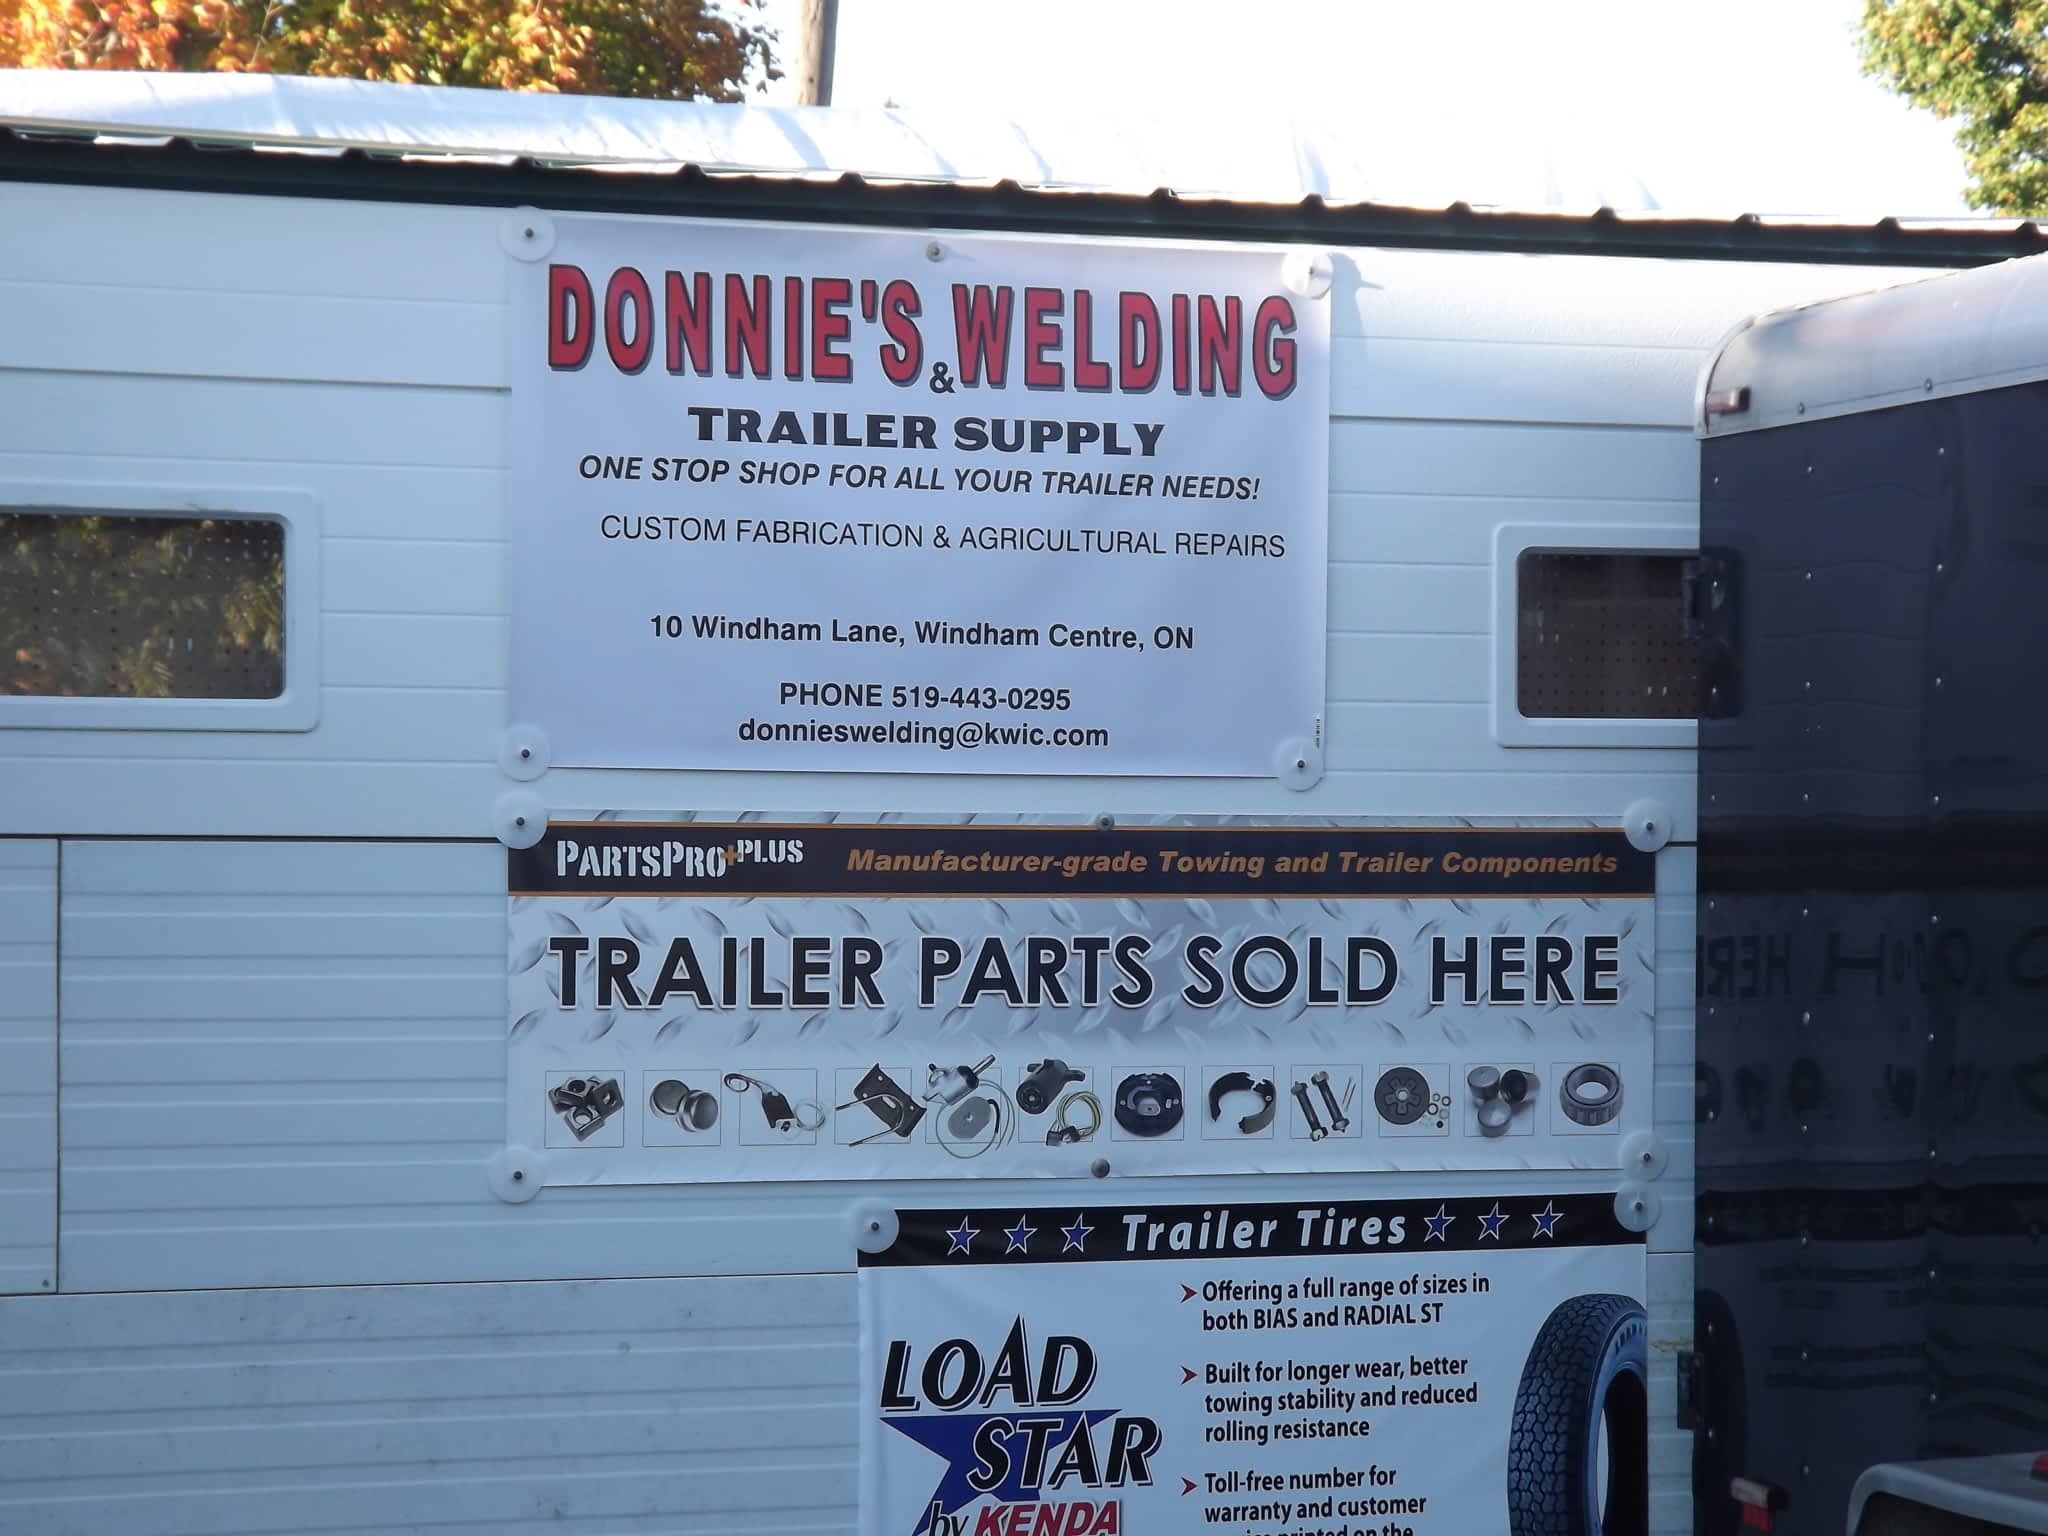 photo Donnie's Welding & Trailer Supply